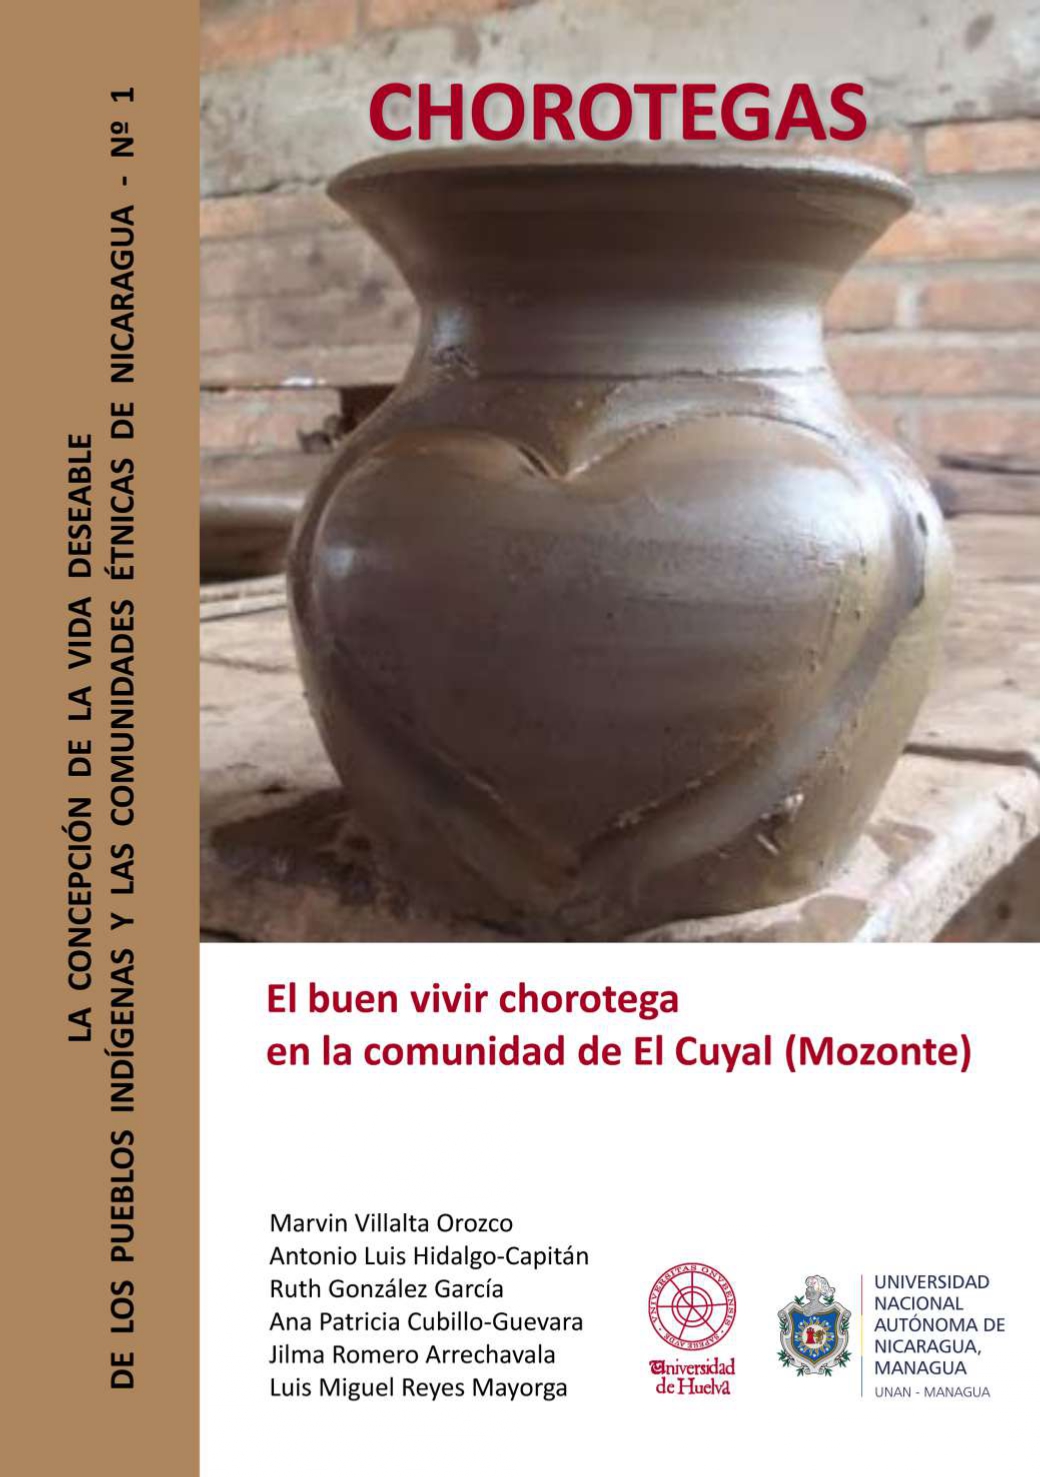 Imagen de portada del libro Chorotegas